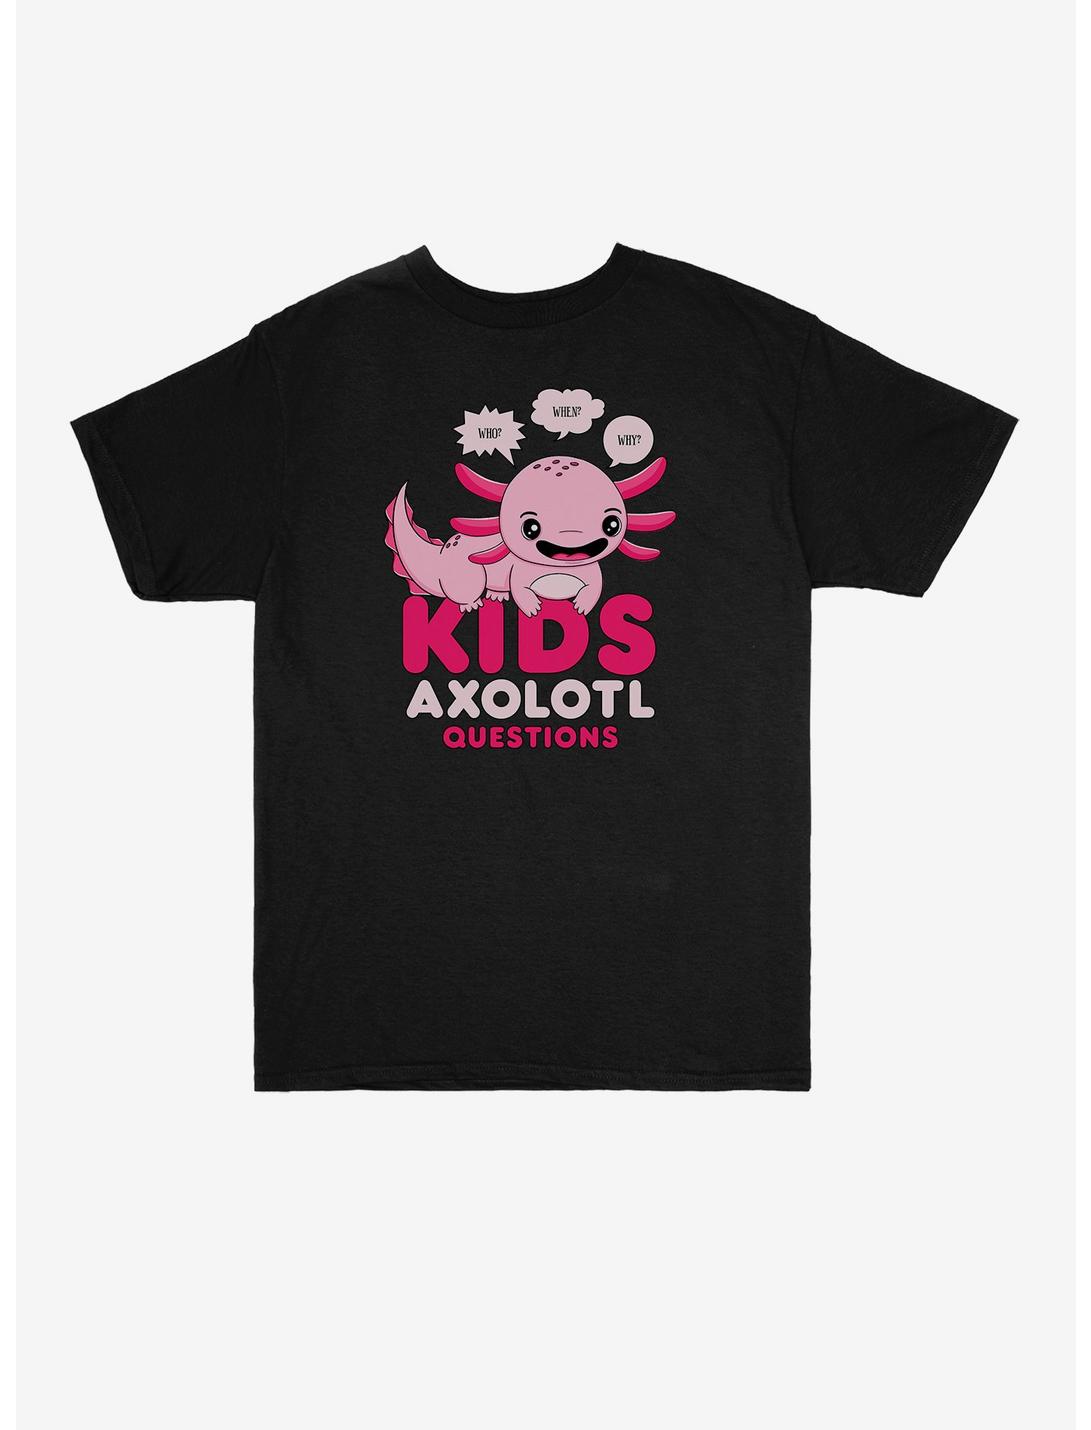 Axolotl Kids Axolotl Questions Youth T-Shirt, BLACK, hi-res